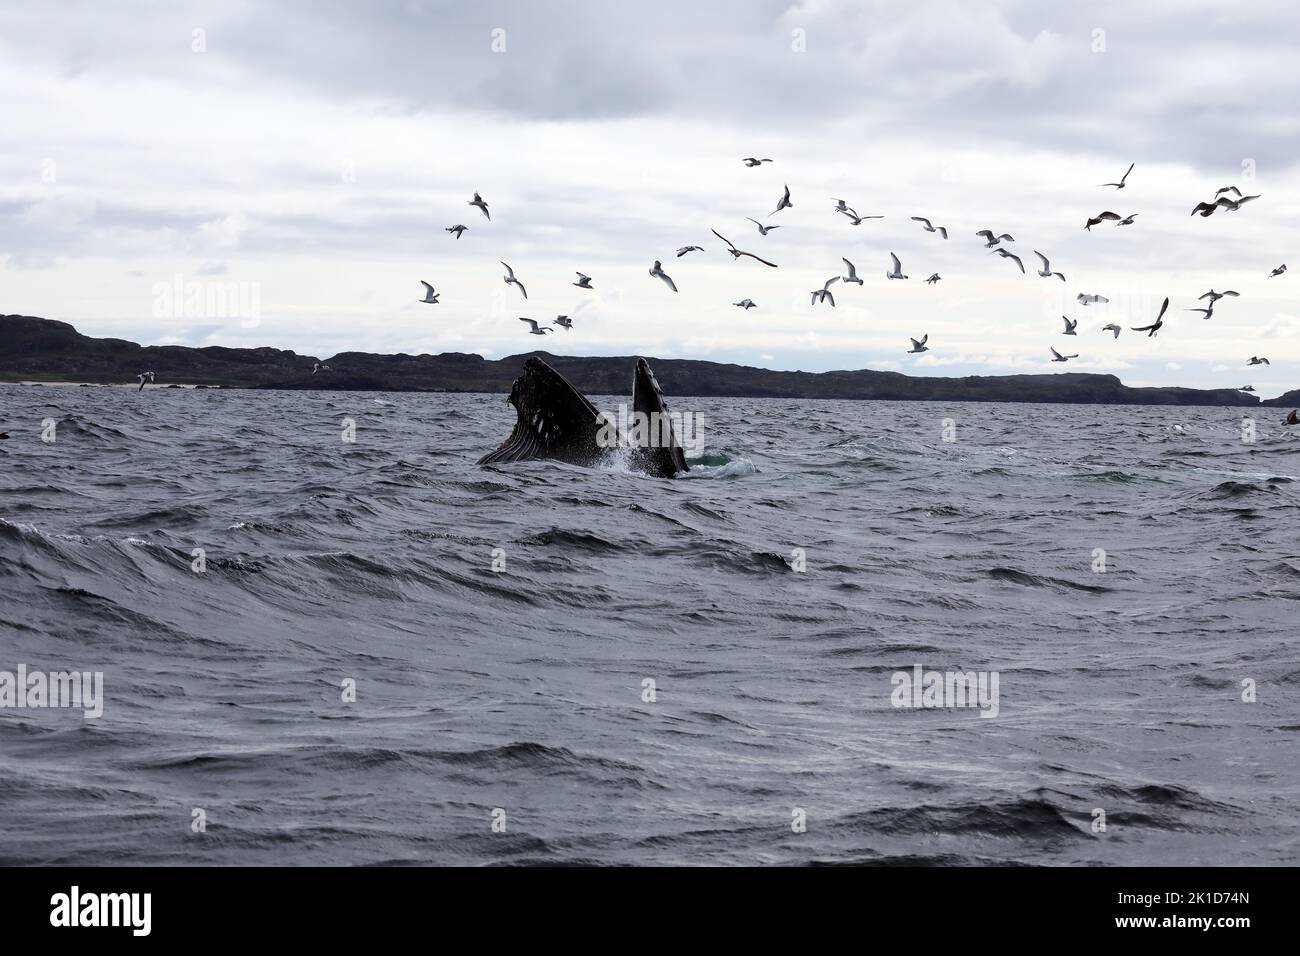 17 septembre 2022 île de Mull, Écosse - rare observation de la baleine à bosse au large des îles de Mull et Iona dans les Hébrides intérieures d'Écosse Banque D'Images